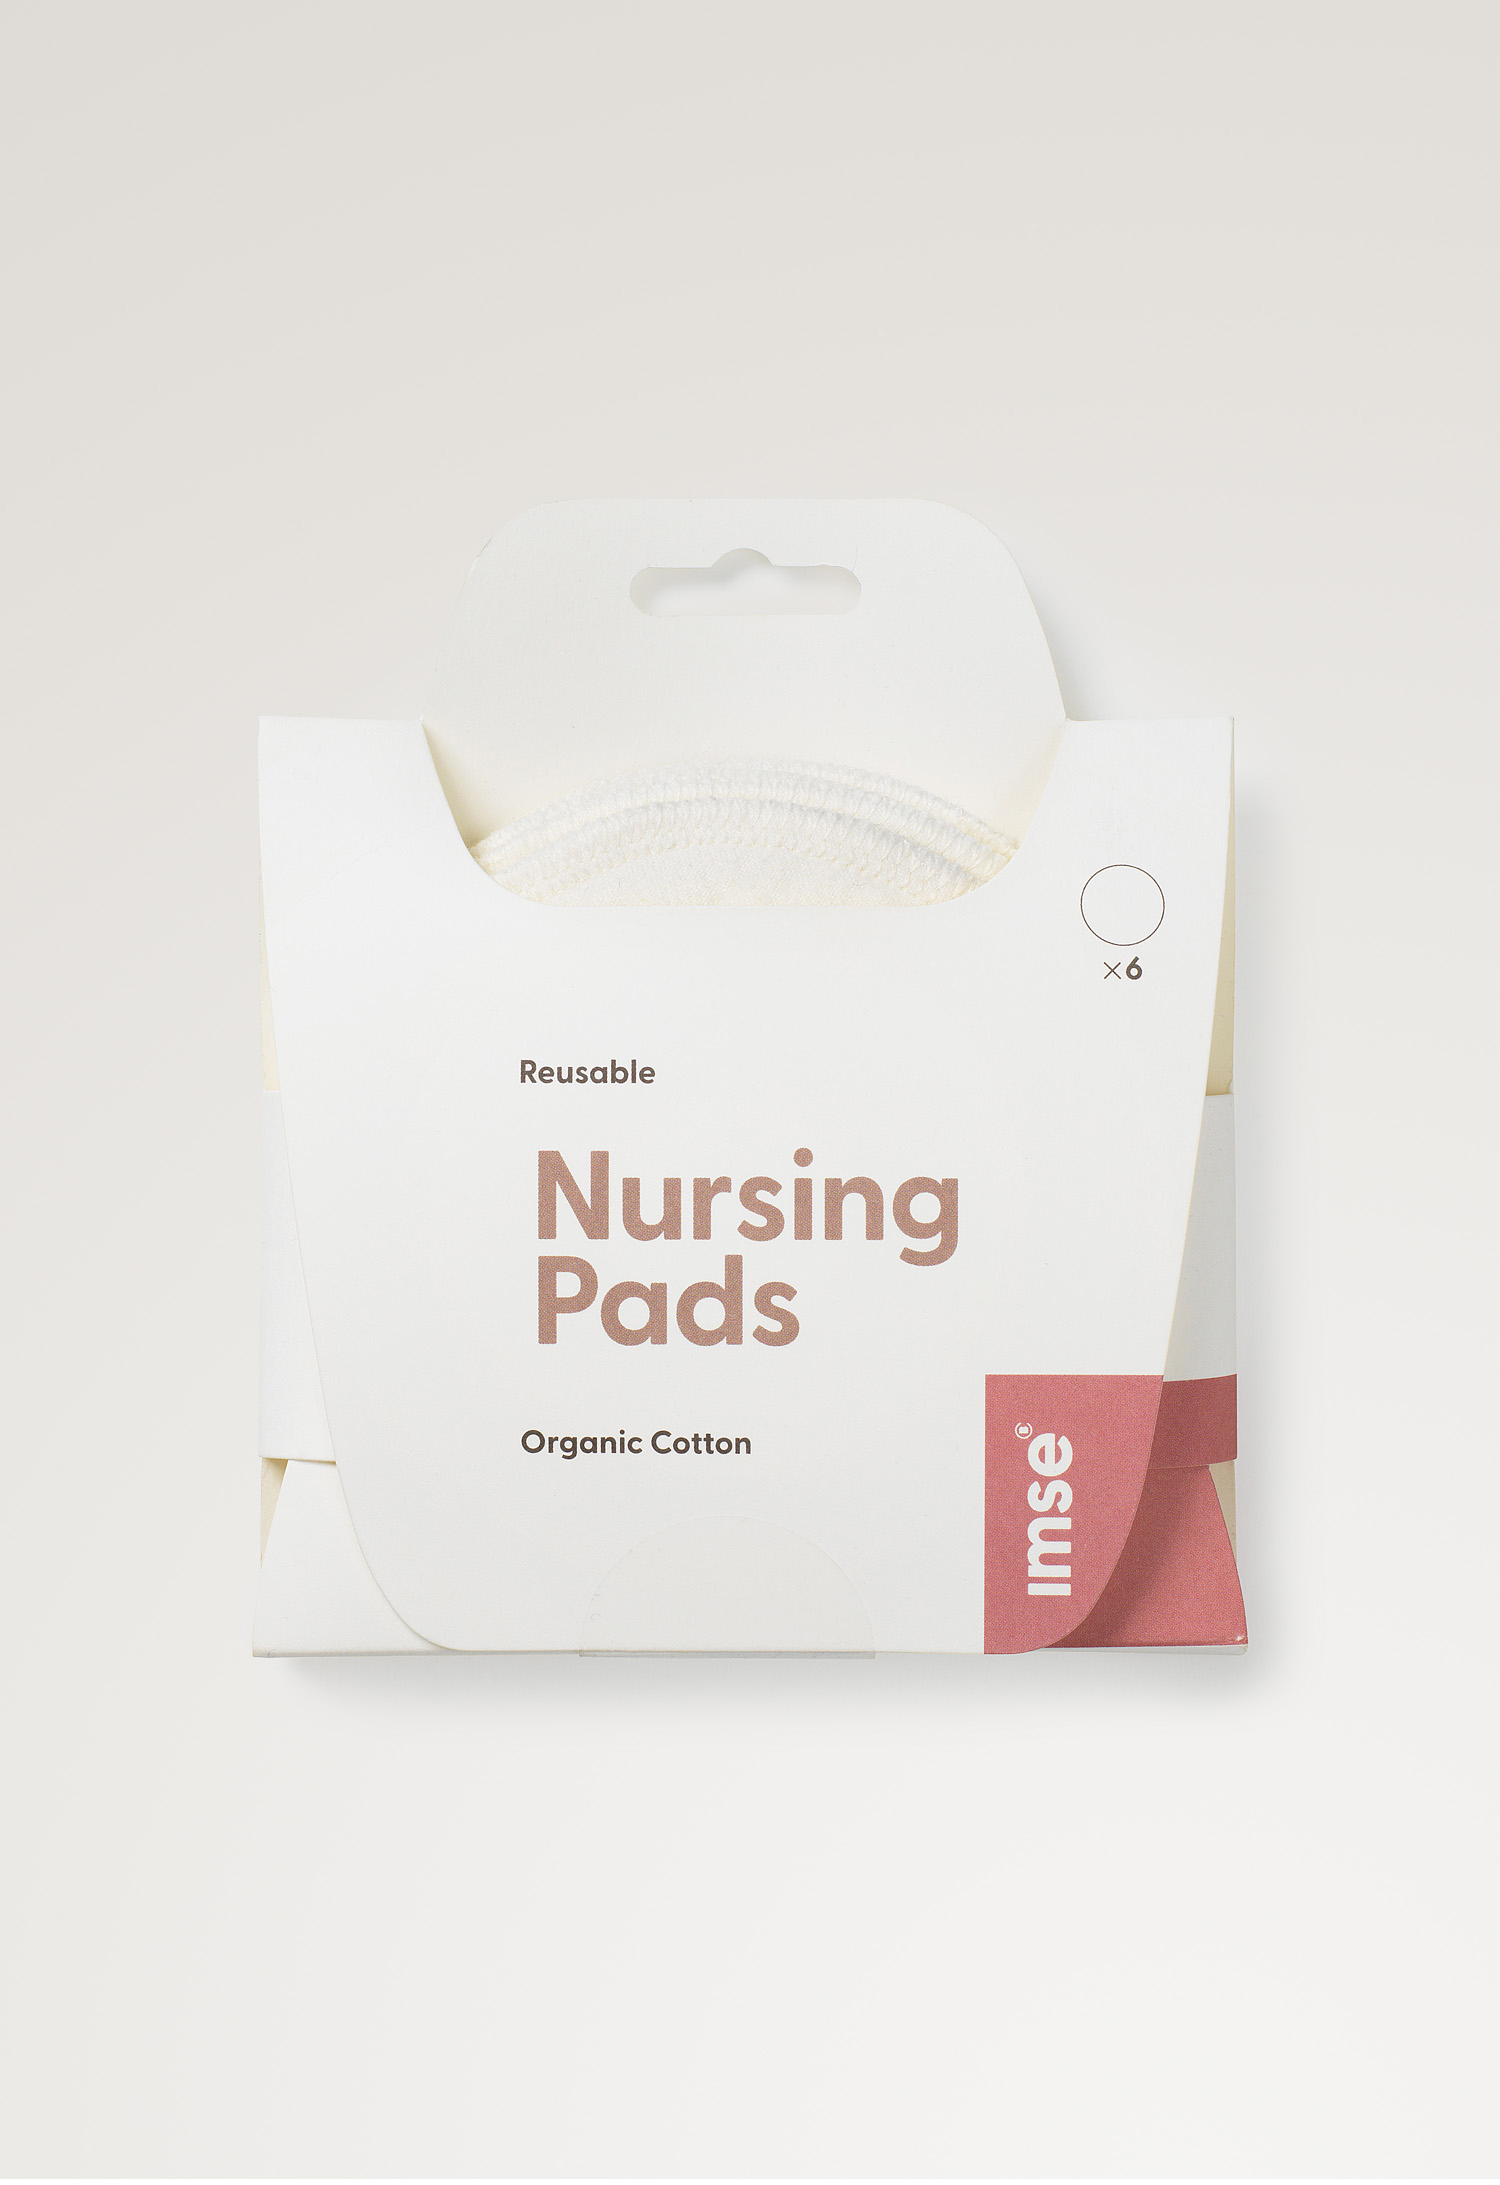 Organic Non-Slip Nursing Pads: Full Coverage for Heavy Leaks – Bodily